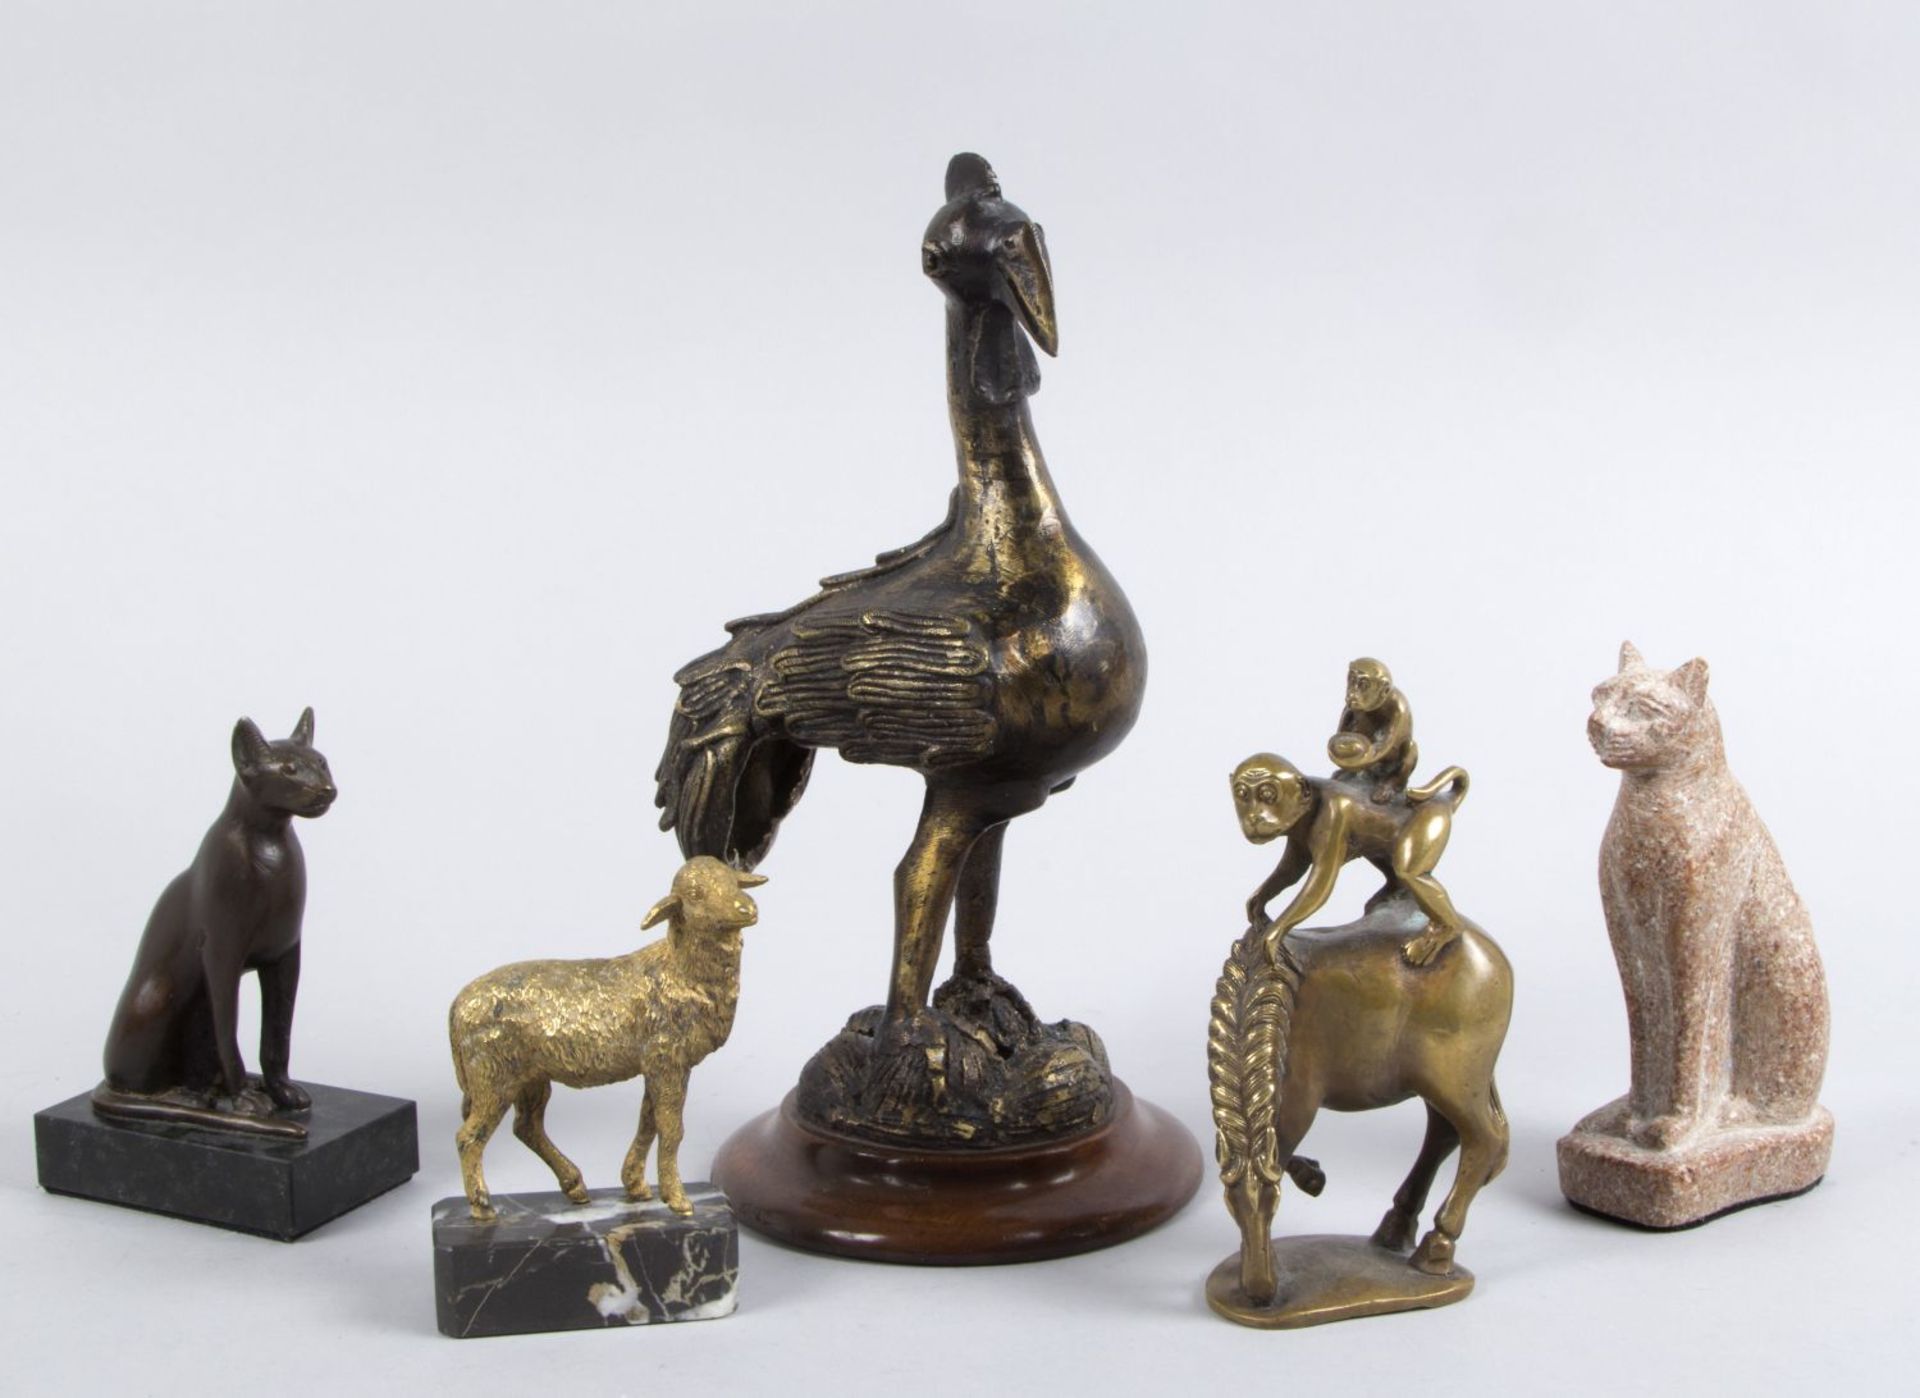 Unbekannt Tierdarstellungen. 5 Skulpturen aus versch. Materialien. H. bis 26 cm.